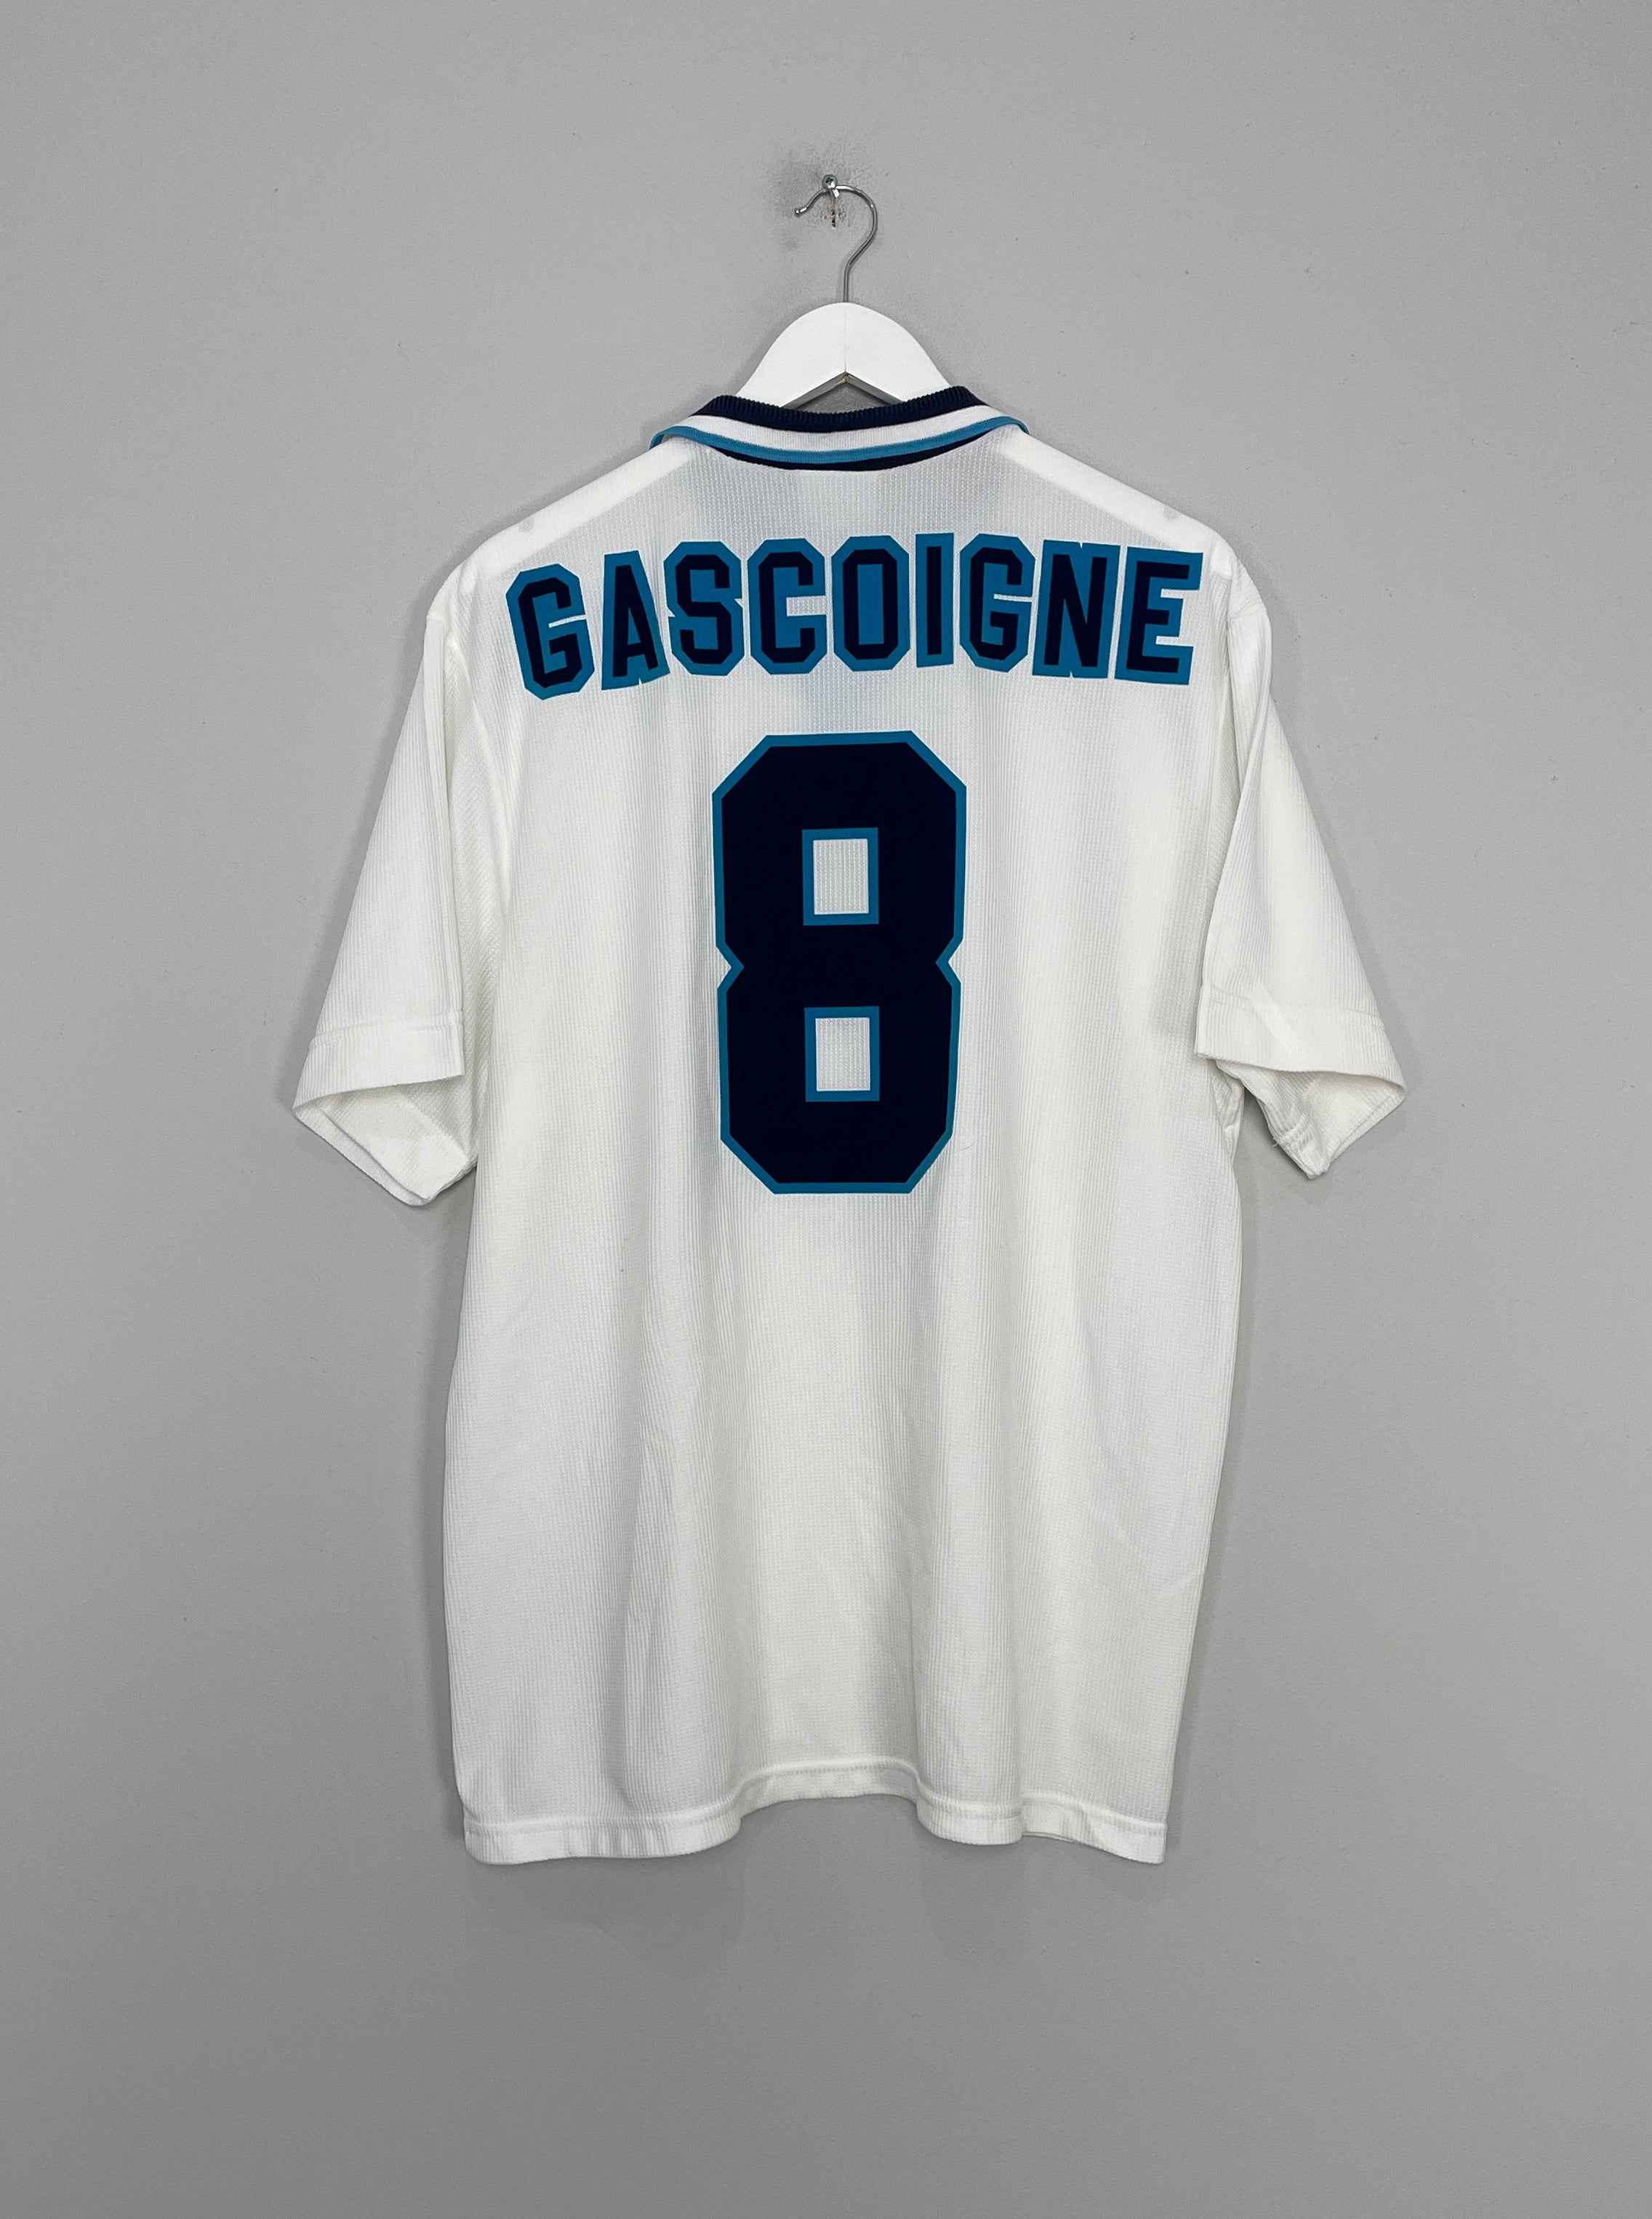 Rangers 1997-1999 Home Shirt #8 Paul Gascoigne - Online Shop From